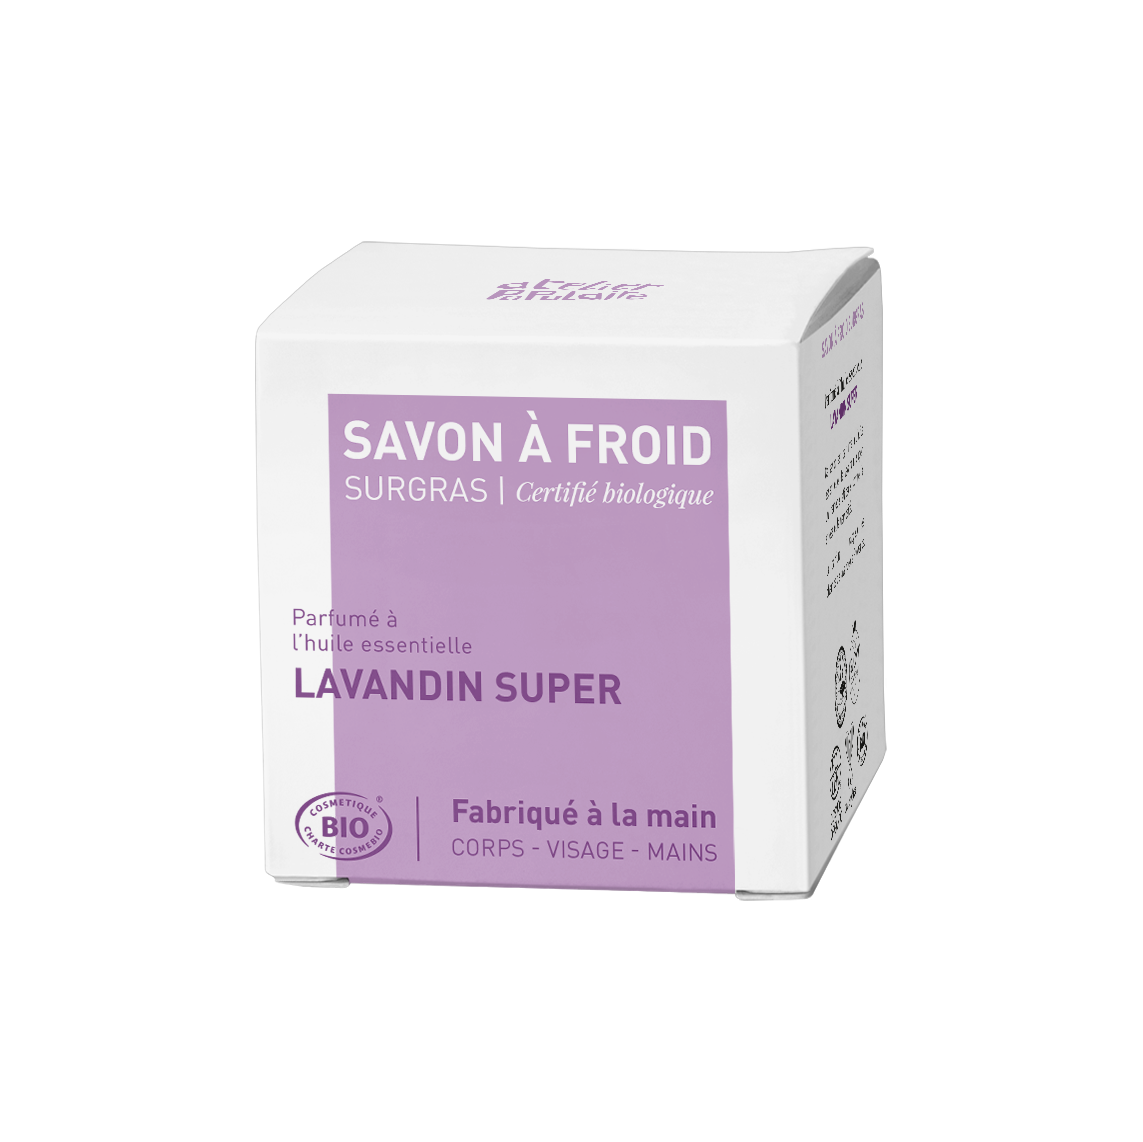 Savon saponifié à froid certifié bio artisanal - Lavandin super par Atelier Populaire - 90g